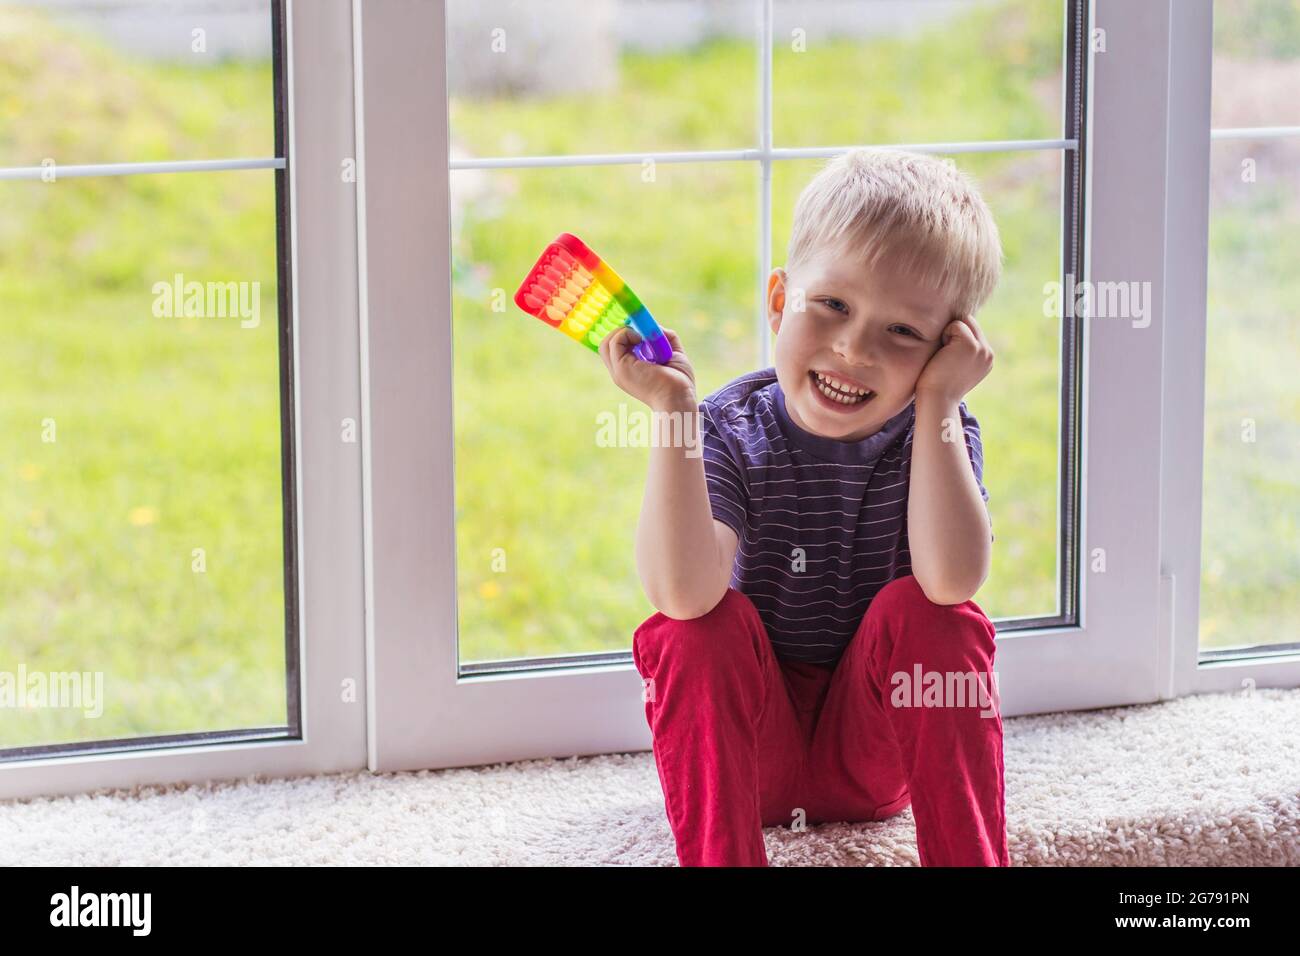 Ein kleiner blonder Junge sitzt und schaut mit einem modernen bunten und hellen popit Spielzeug Simple Grübchen auf die Kamera. Das Kind mit bunten trendigen Antistress s Stockfoto